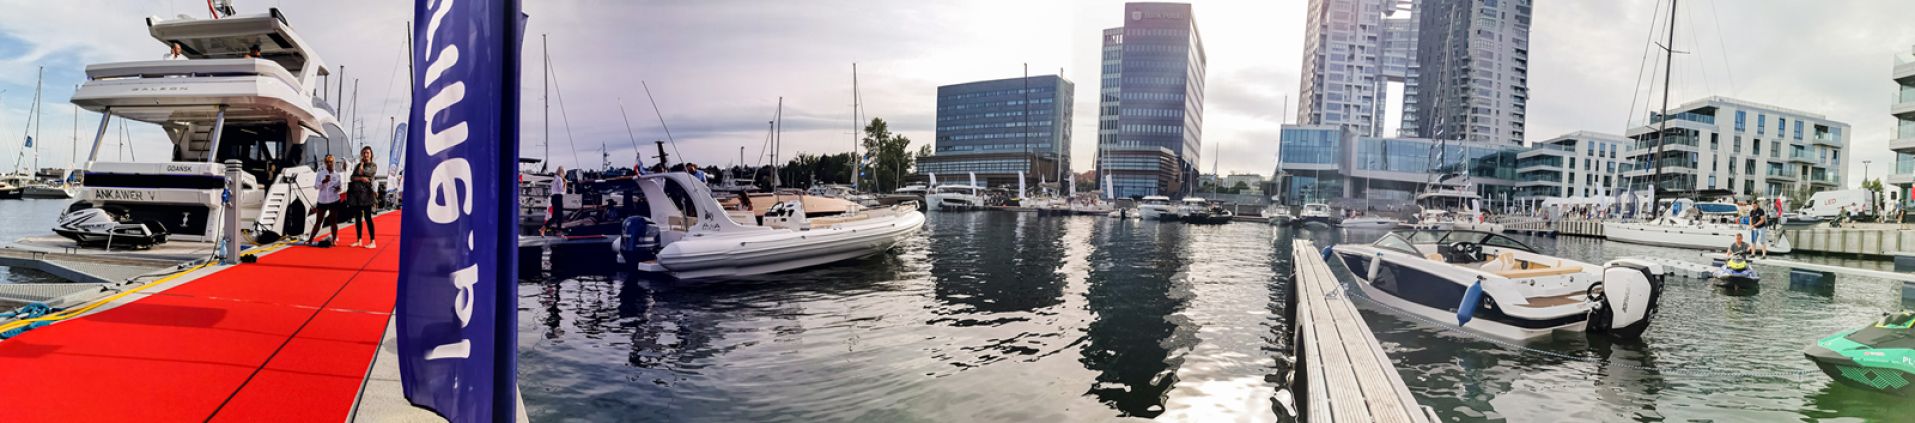 Marinia Yacht Park, w Gdyni 